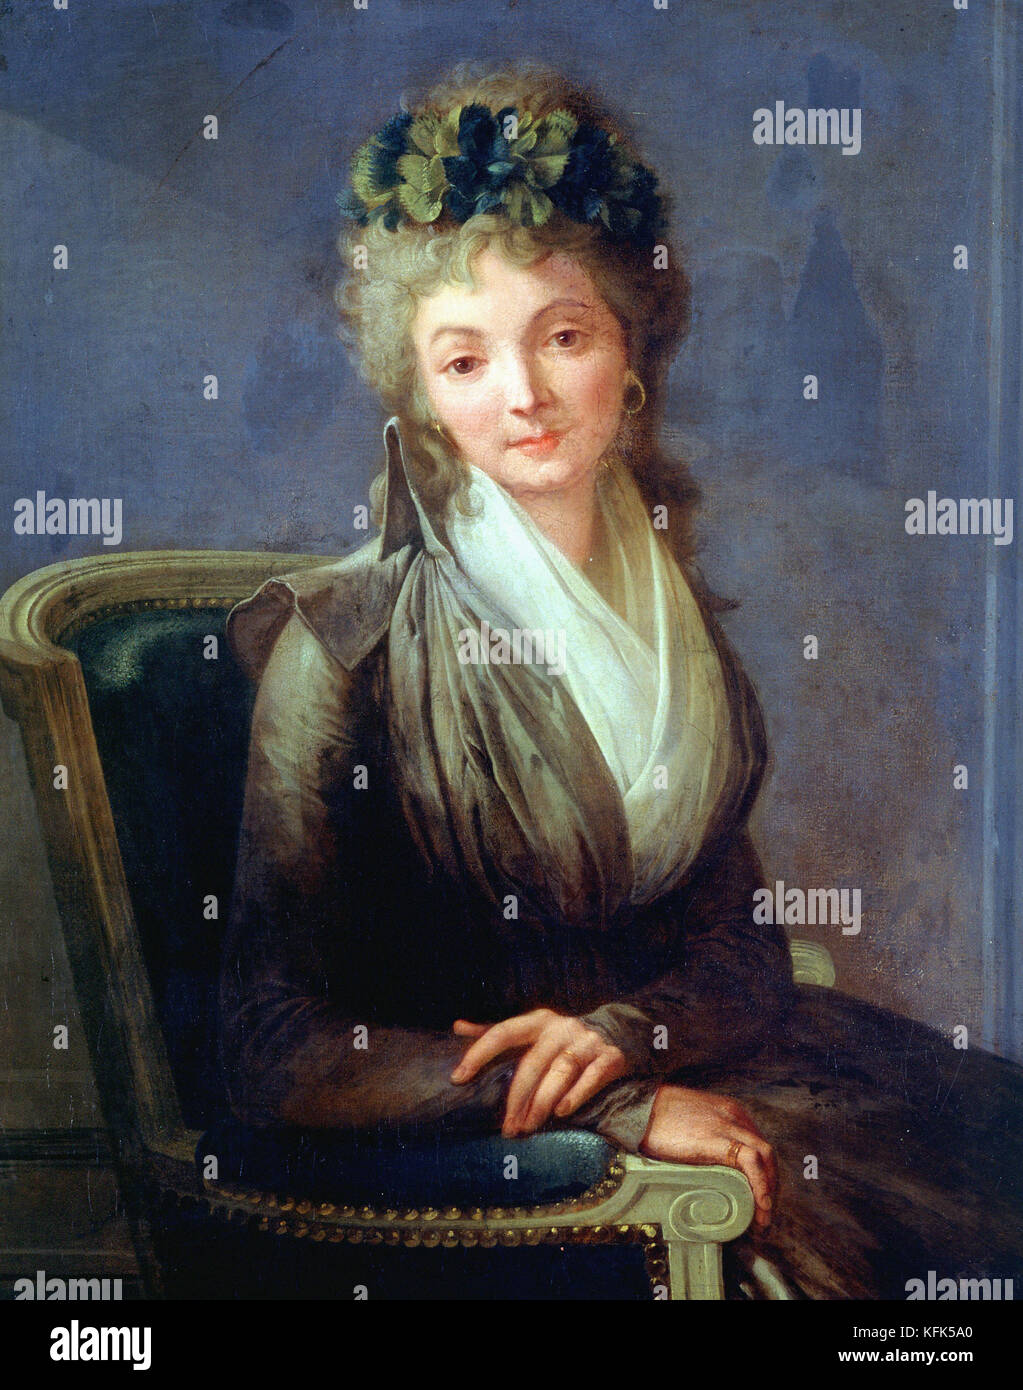 Louis Léopold Boilly   Presumed portrait of Lucile Desmoulins (born Anne-Louise Duplessis-Larison)   18th century  - Carnavalet Museum, Paris Stock Photo